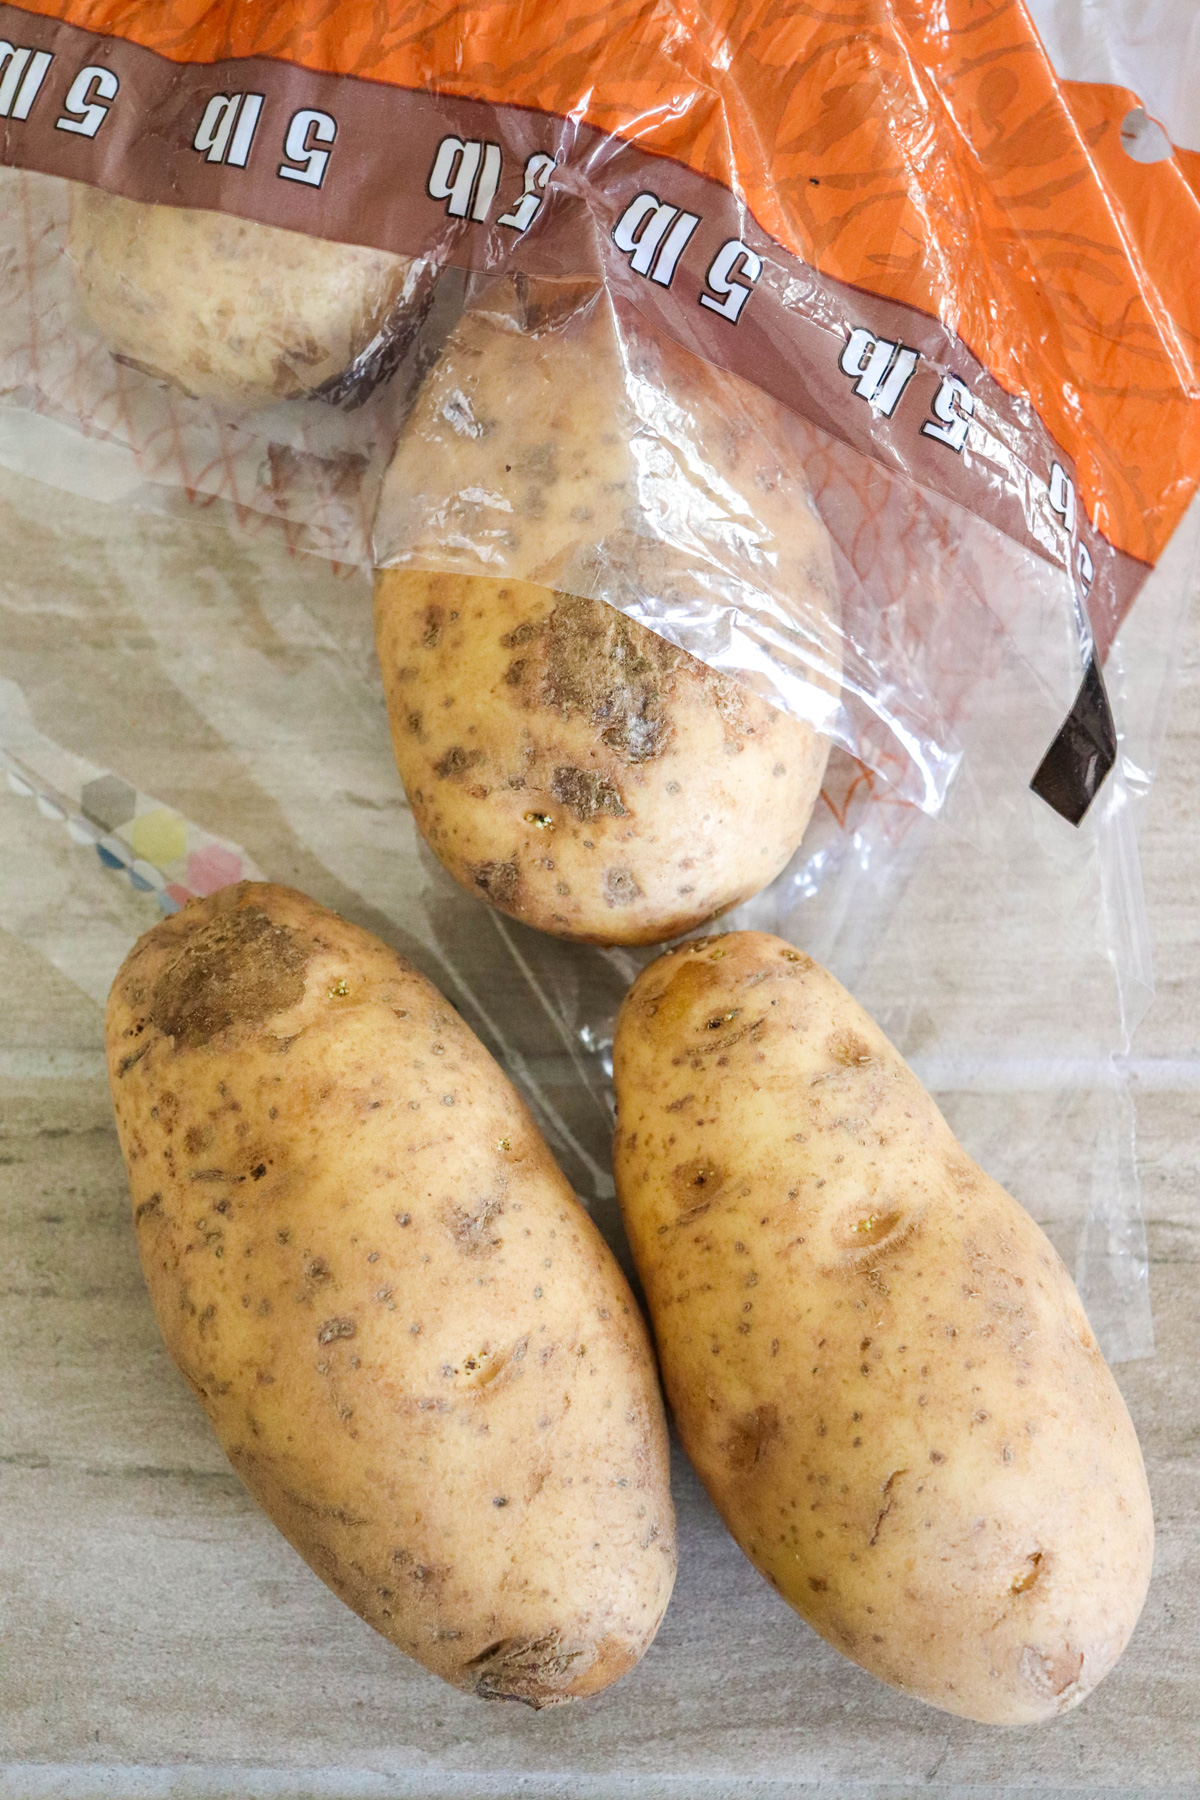 A bag of Baking Potatoes (Russett)